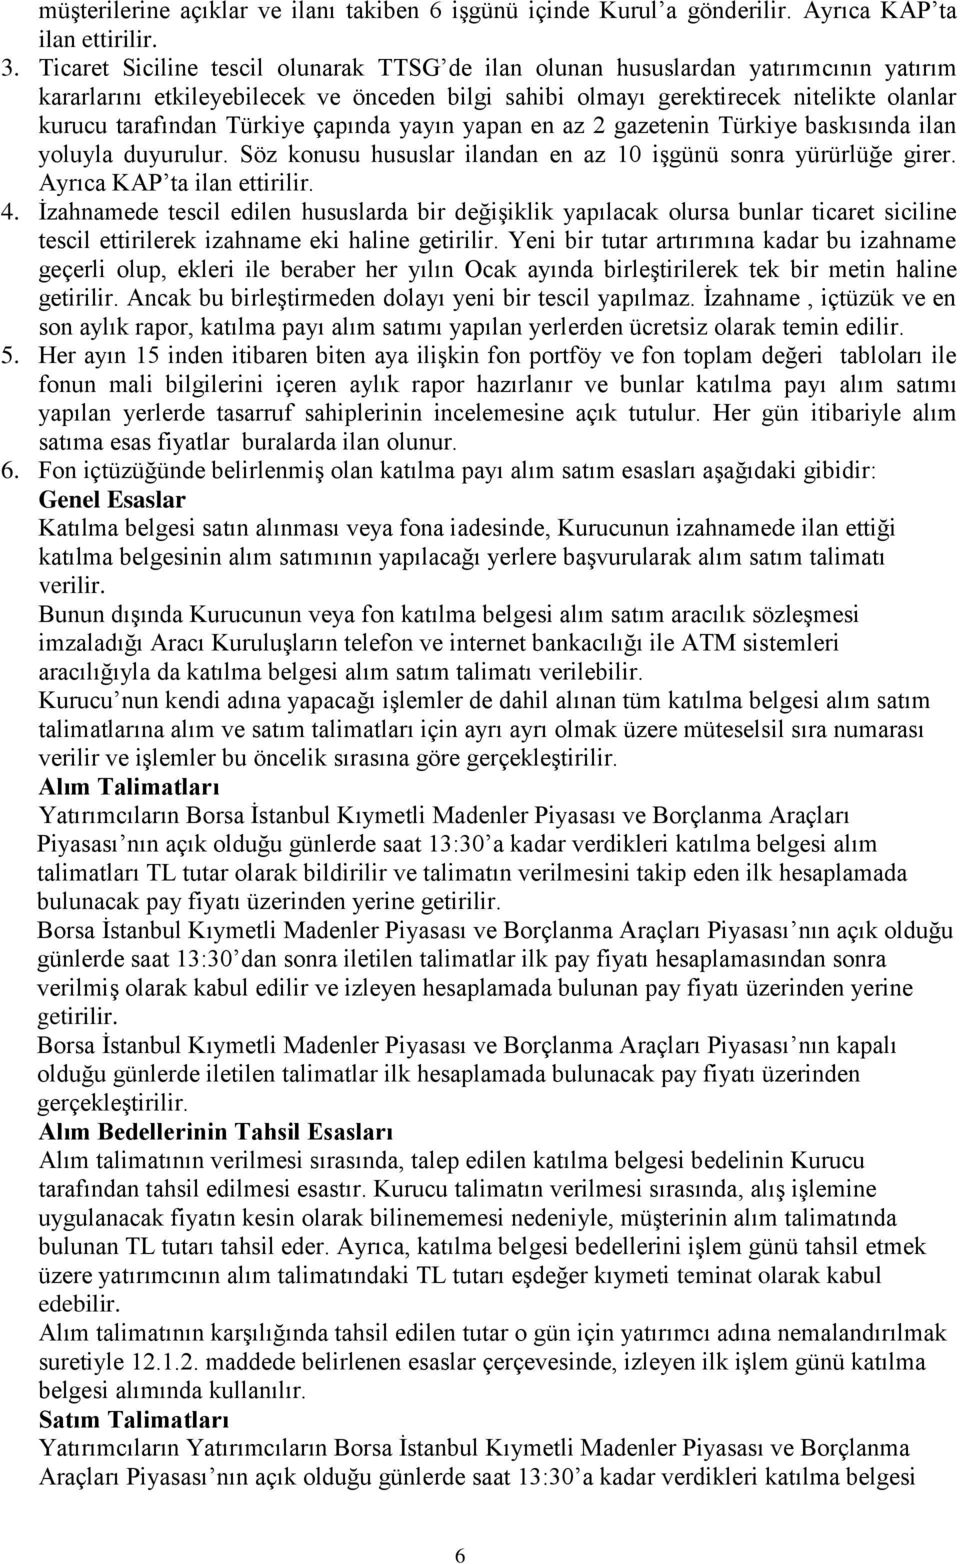 Türkiye çapında yayın yapan en az 2 gazetenin Türkiye baskısında ilan yoluyla duyurulur. Söz konusu hususlar ilandan en az 10 işgünü sonra yürürlüğe girer. Ayrıca KAP ta ilan ettirilir. 4.